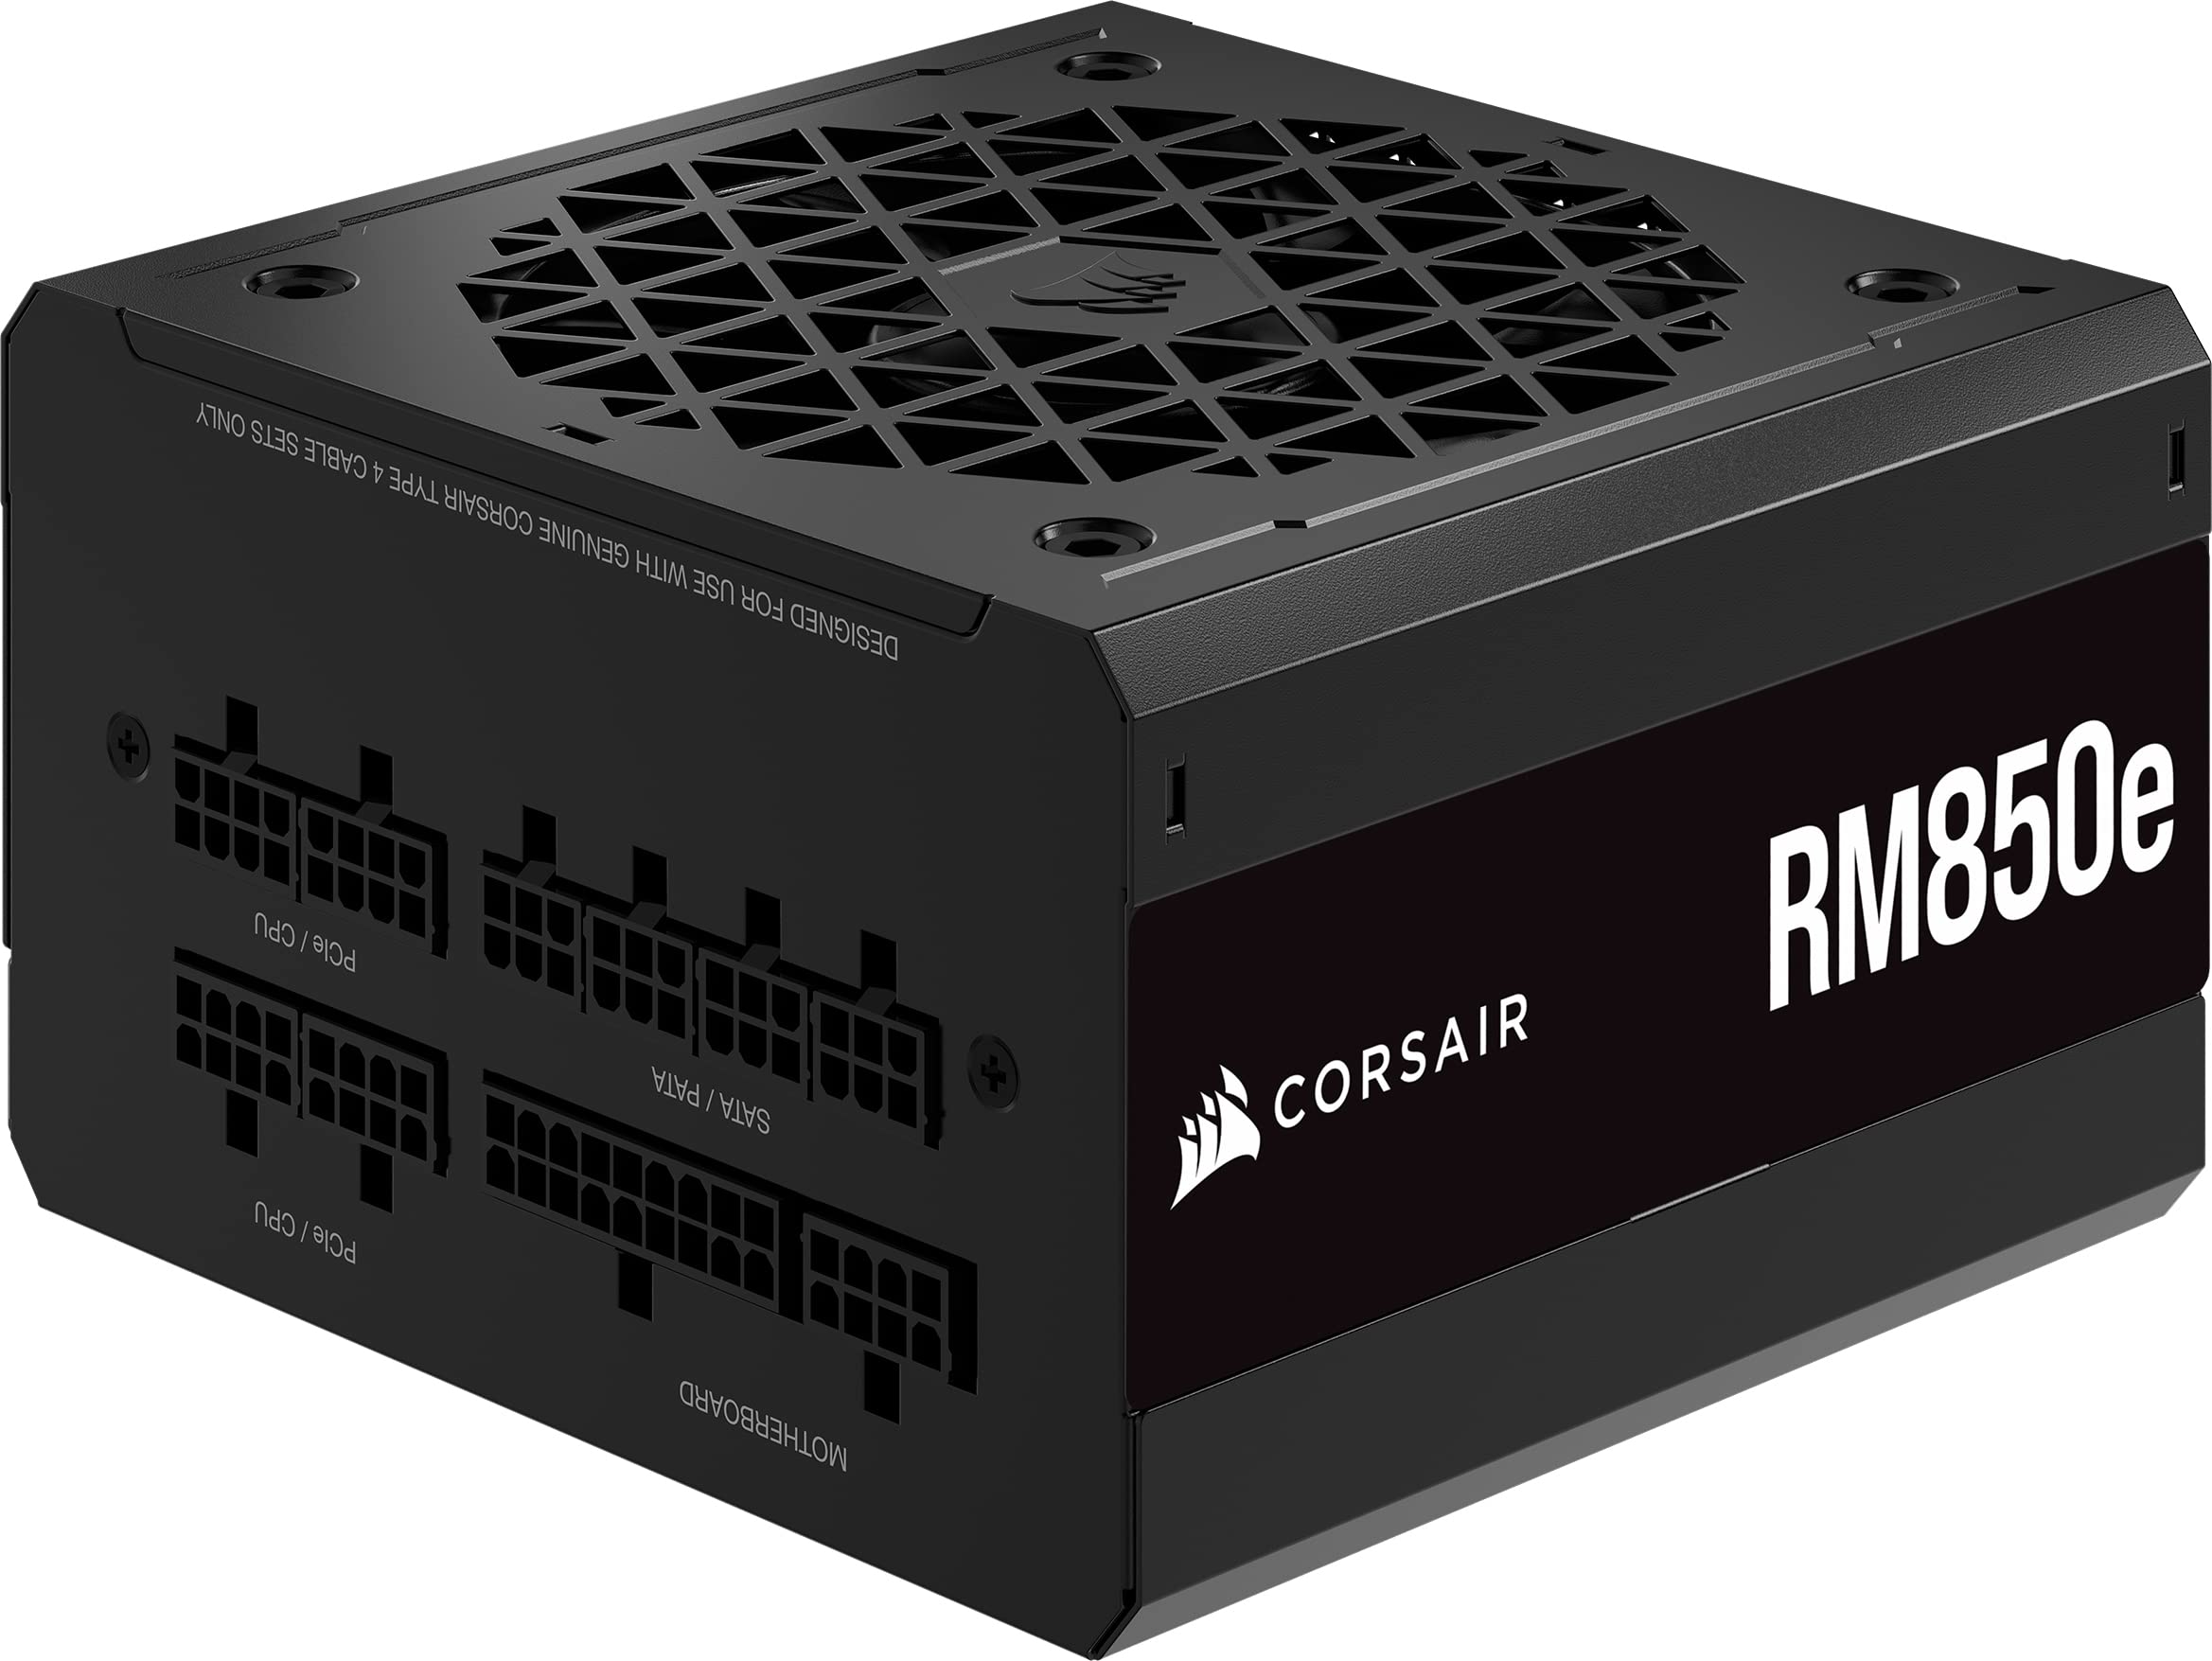 grand choix Corsair RM850e (2023) Alimentation Entièrement Modulaire et Silencieuse - Compatible ATX 3.0 et PCIe 5.0 - Condensateurs à 105°C - Efficacité 80 PLUS Gold - Support de Veille Moderne - Noir GrwuLbPBU stylé 